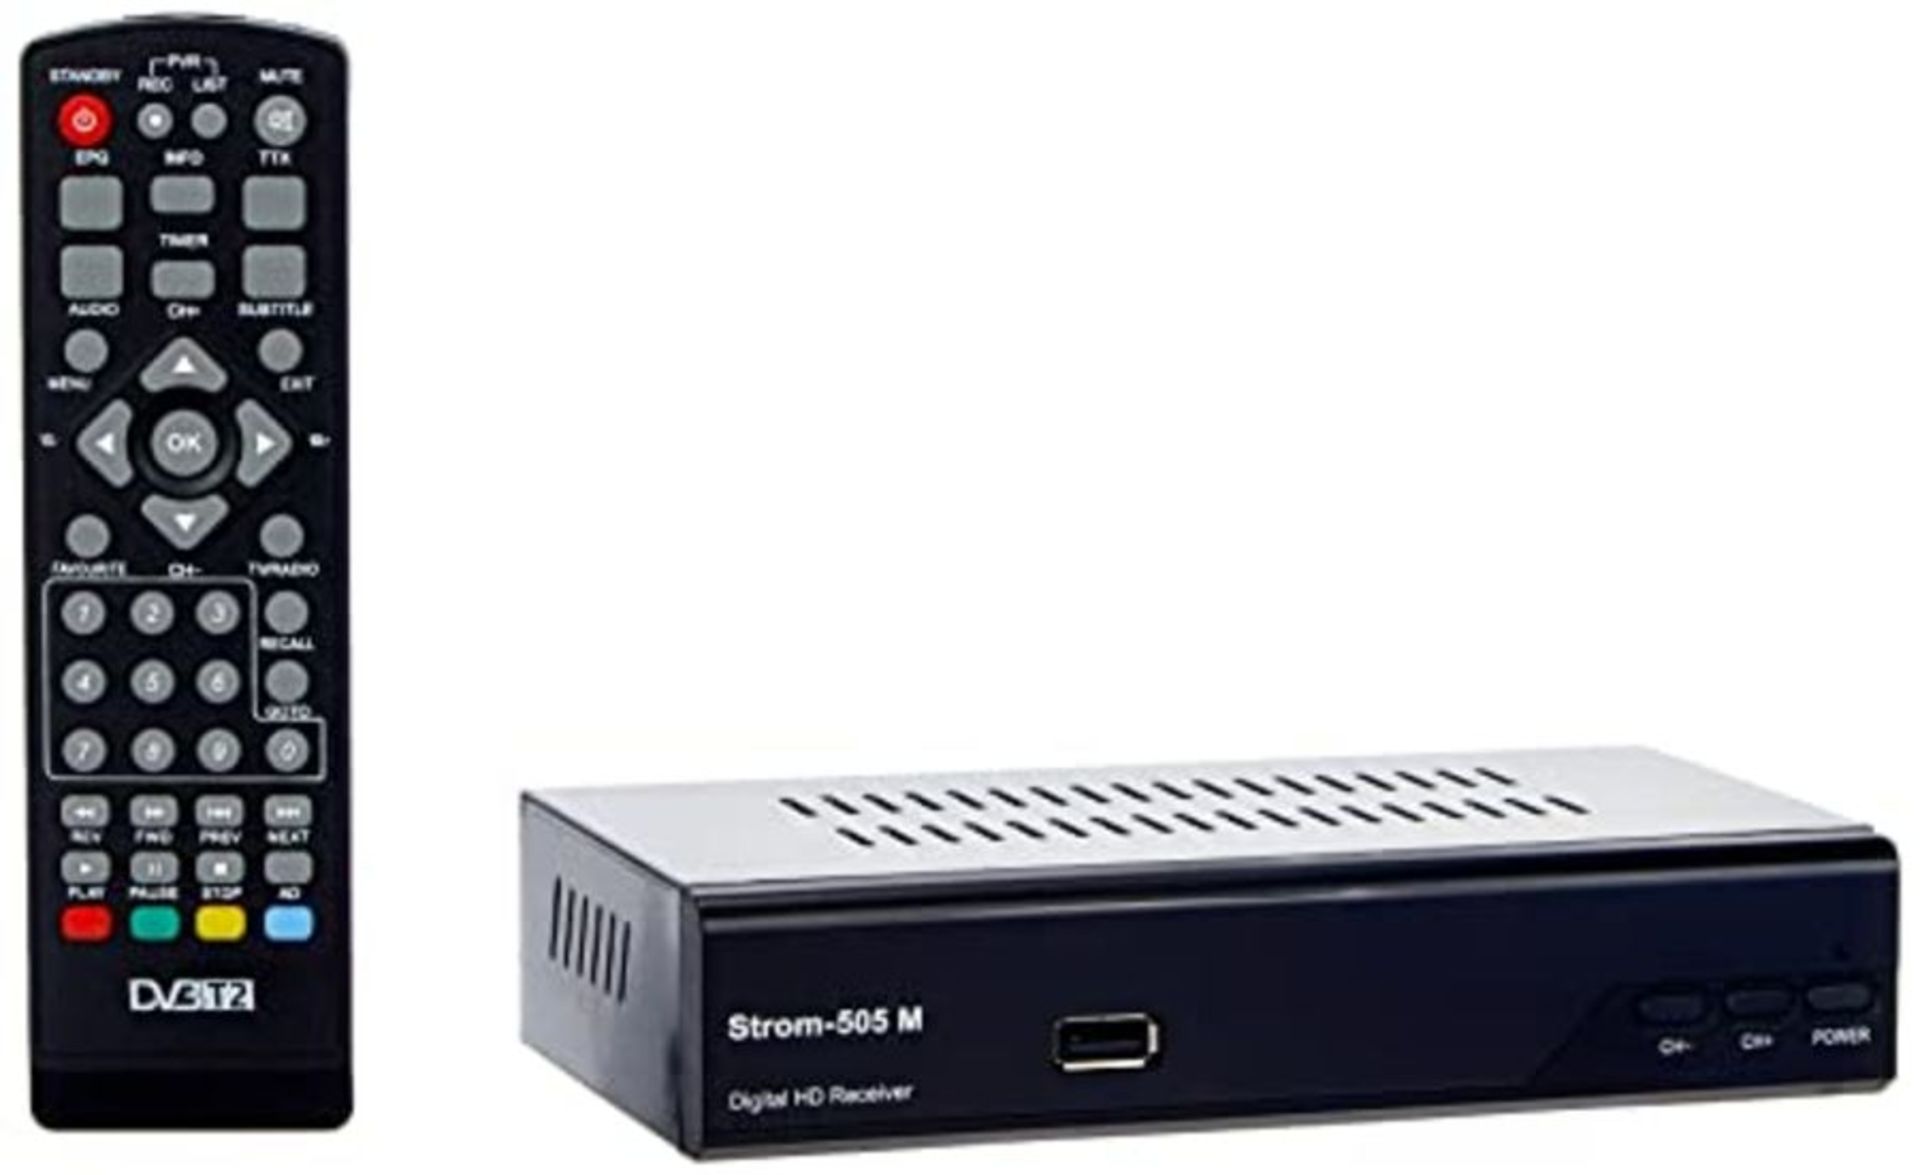 Strom-505 H.265 HEVC Receiver HD-DVB-T2 HDMI Full HD PVR USB Mediaplayer